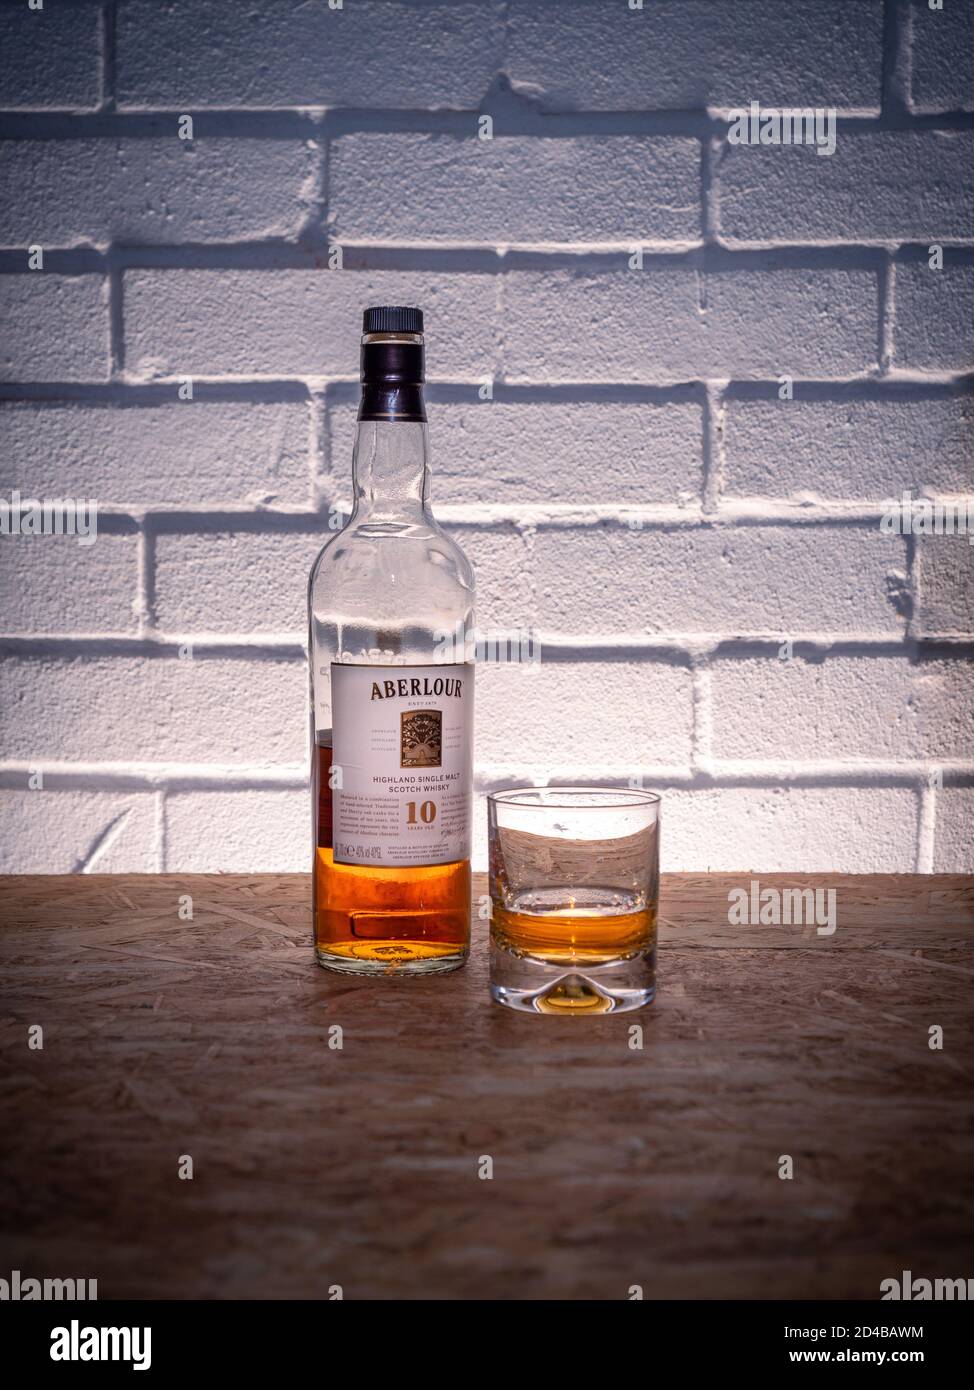 Eine halbe volle Flasche schottischen Whisky aus dem Aberlour Destillerie mit einem Glas vor Backsteinmauer Hintergrund Stockfoto